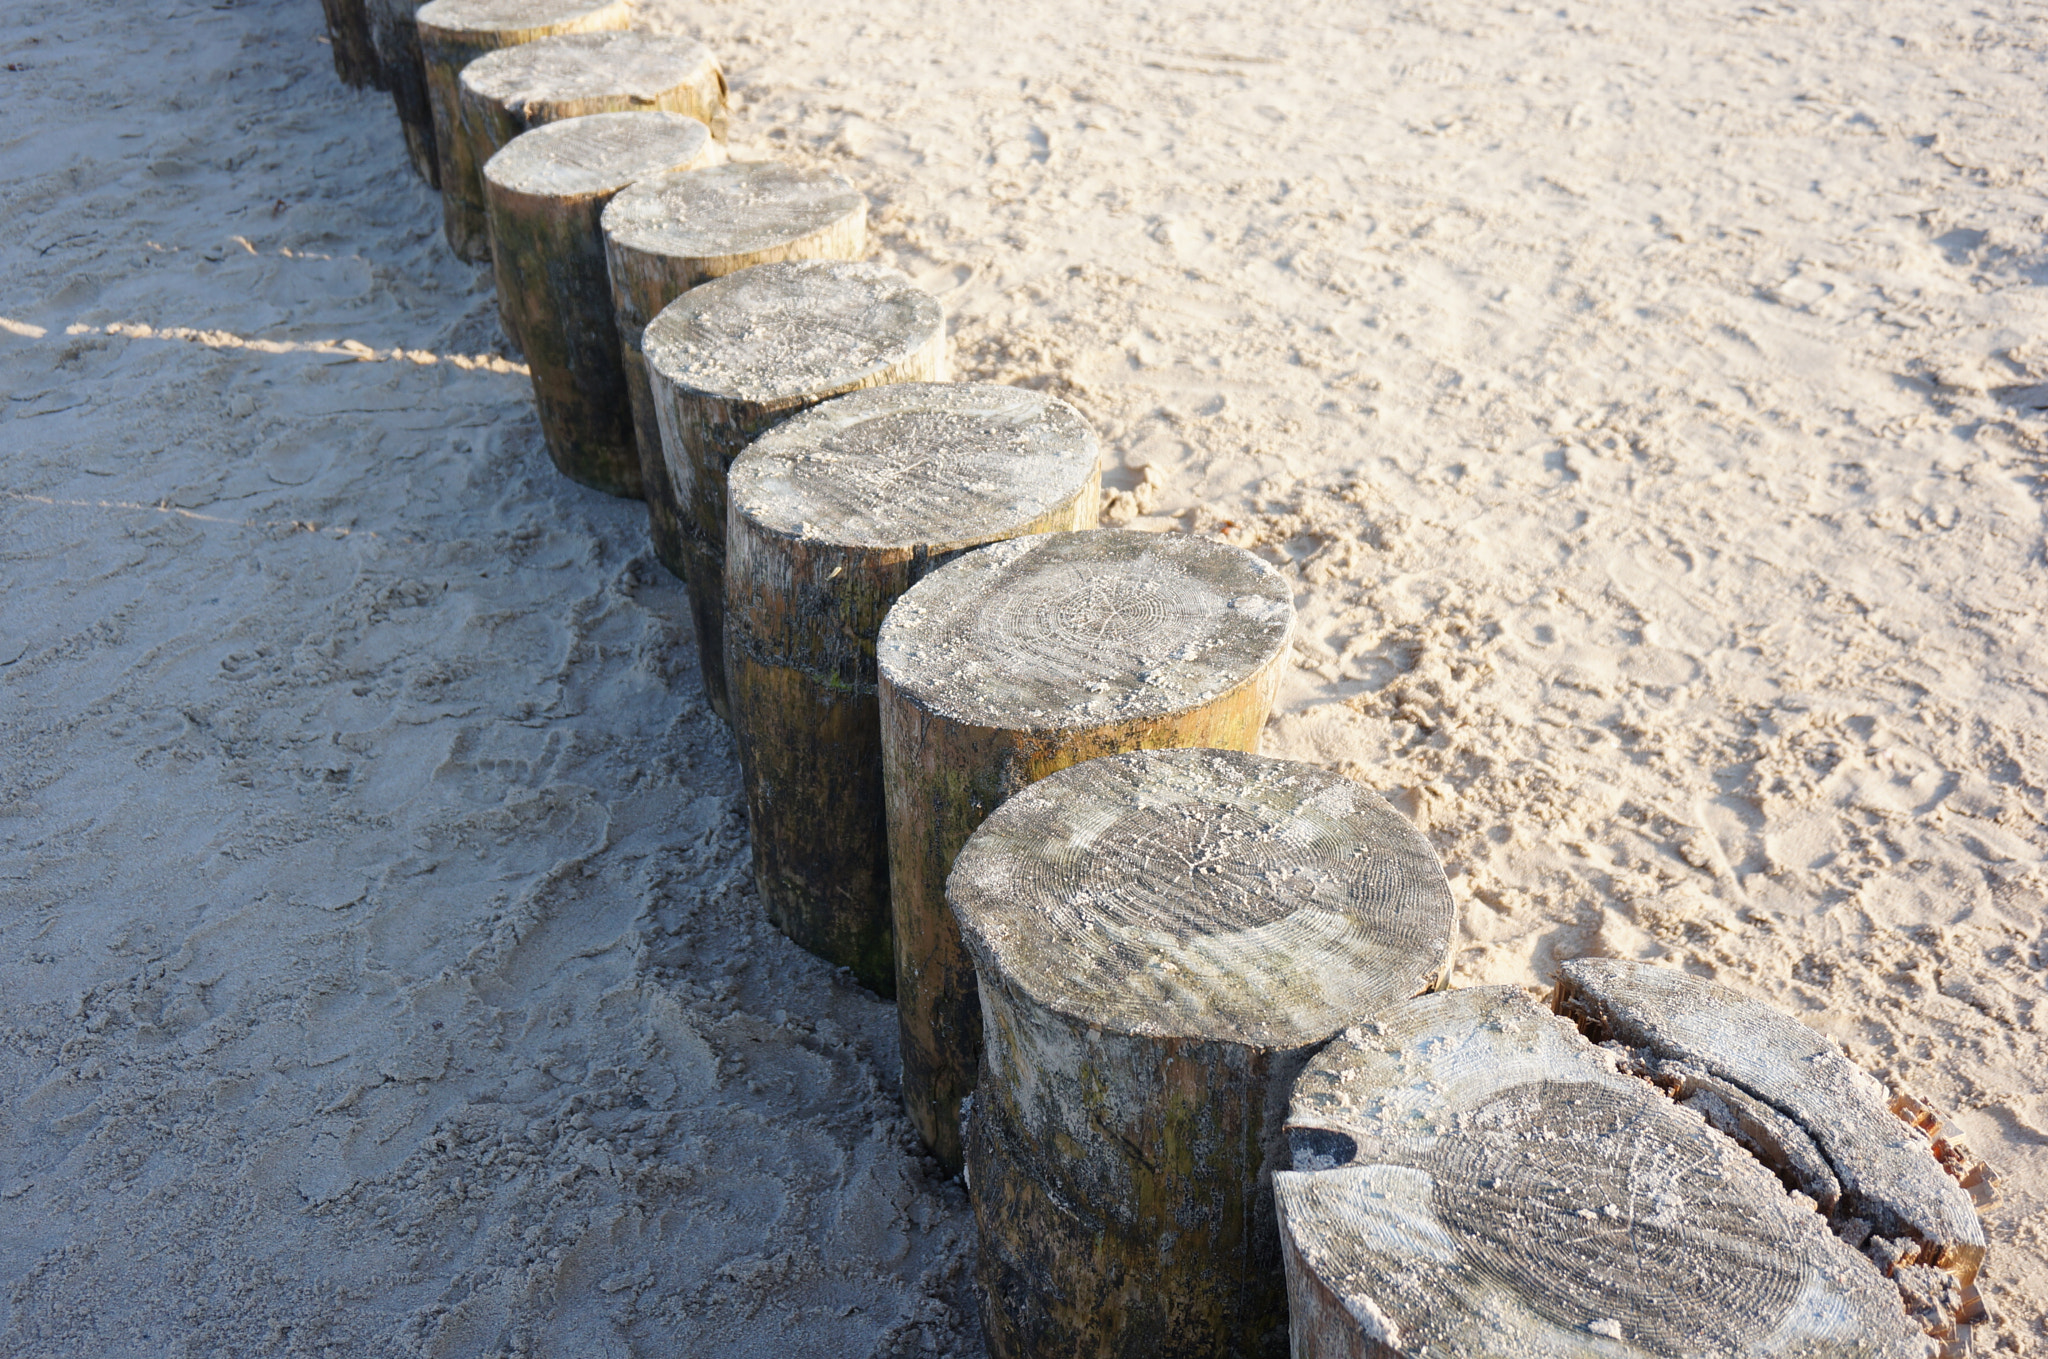 Sony Alpha NEX-5N + Sony E 18-50mm F4-5.6 sample photo. Row of wooden poles on beach sand photography